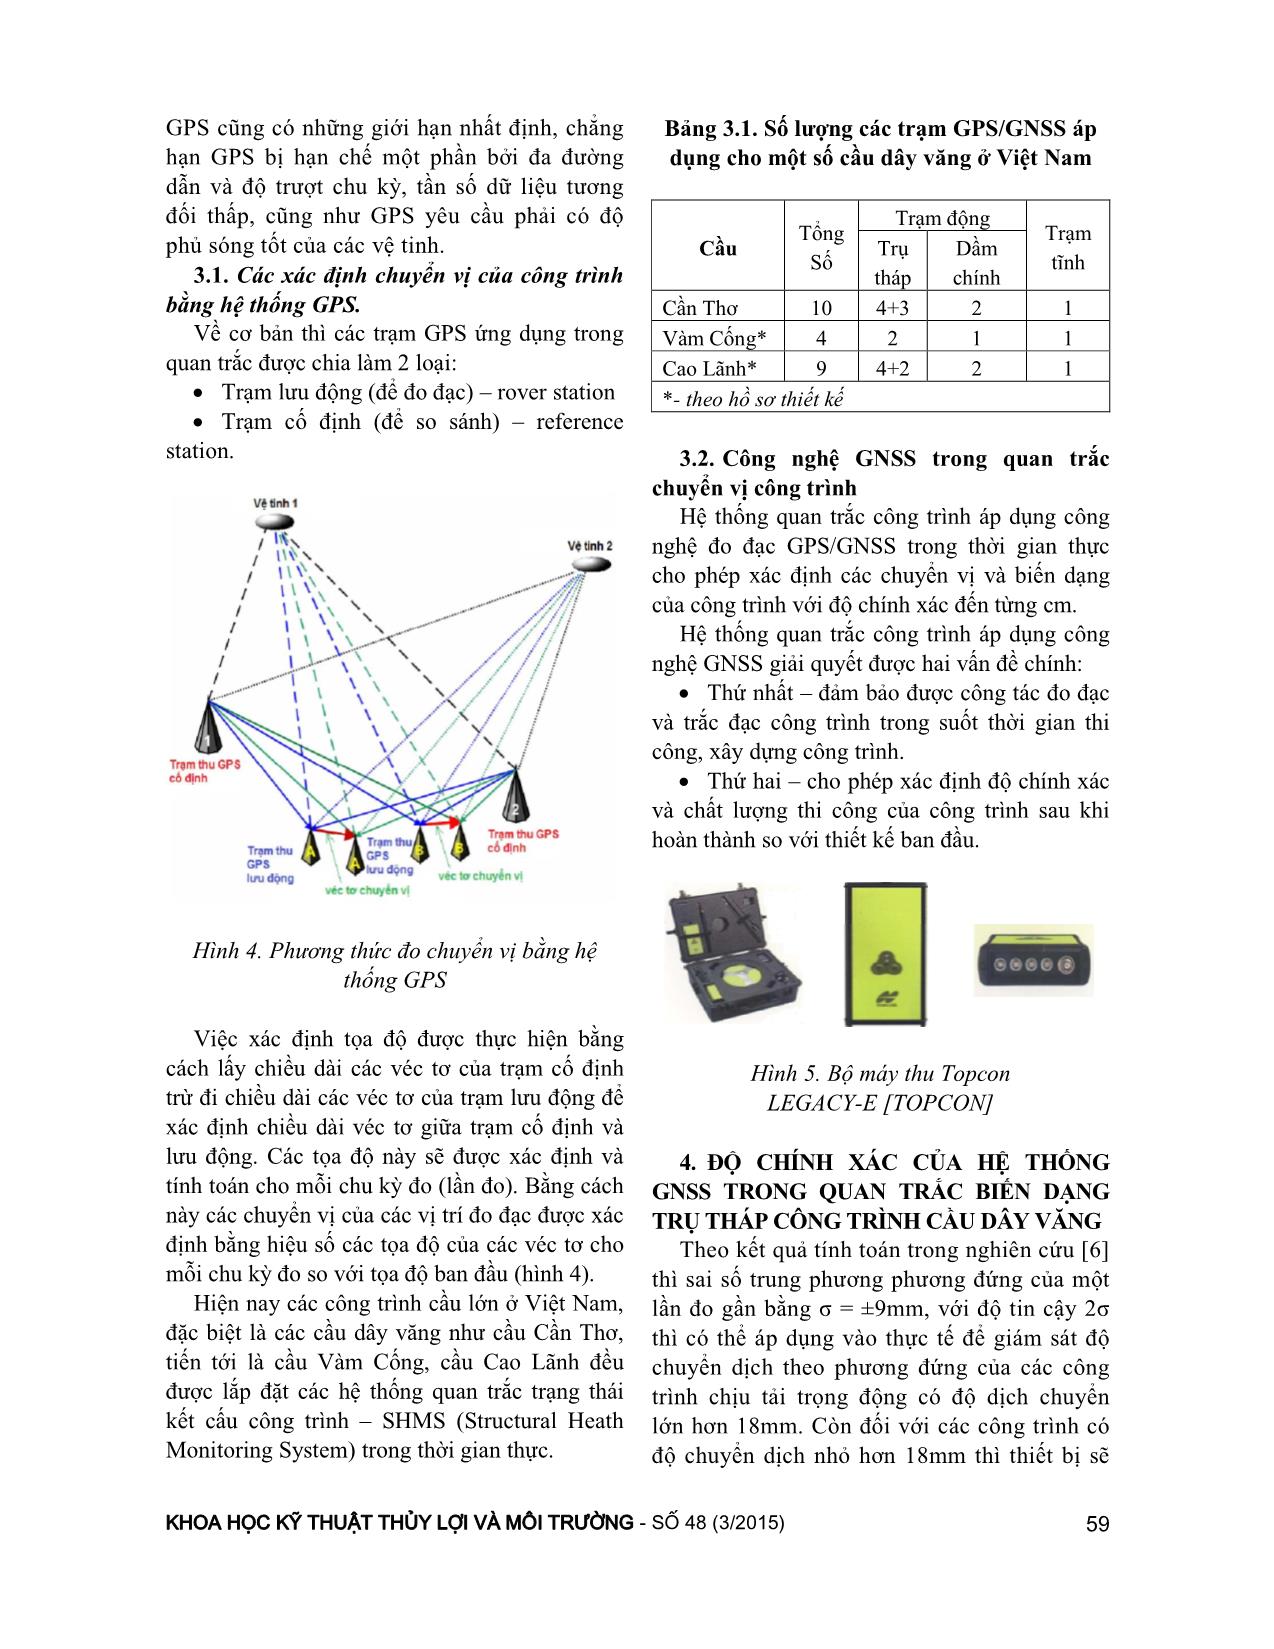 Các phương pháp quan trắc và xác định chuyển vị trụ tháp cầu dây văng của hệ thống quan trắc công trình cầu trang 3